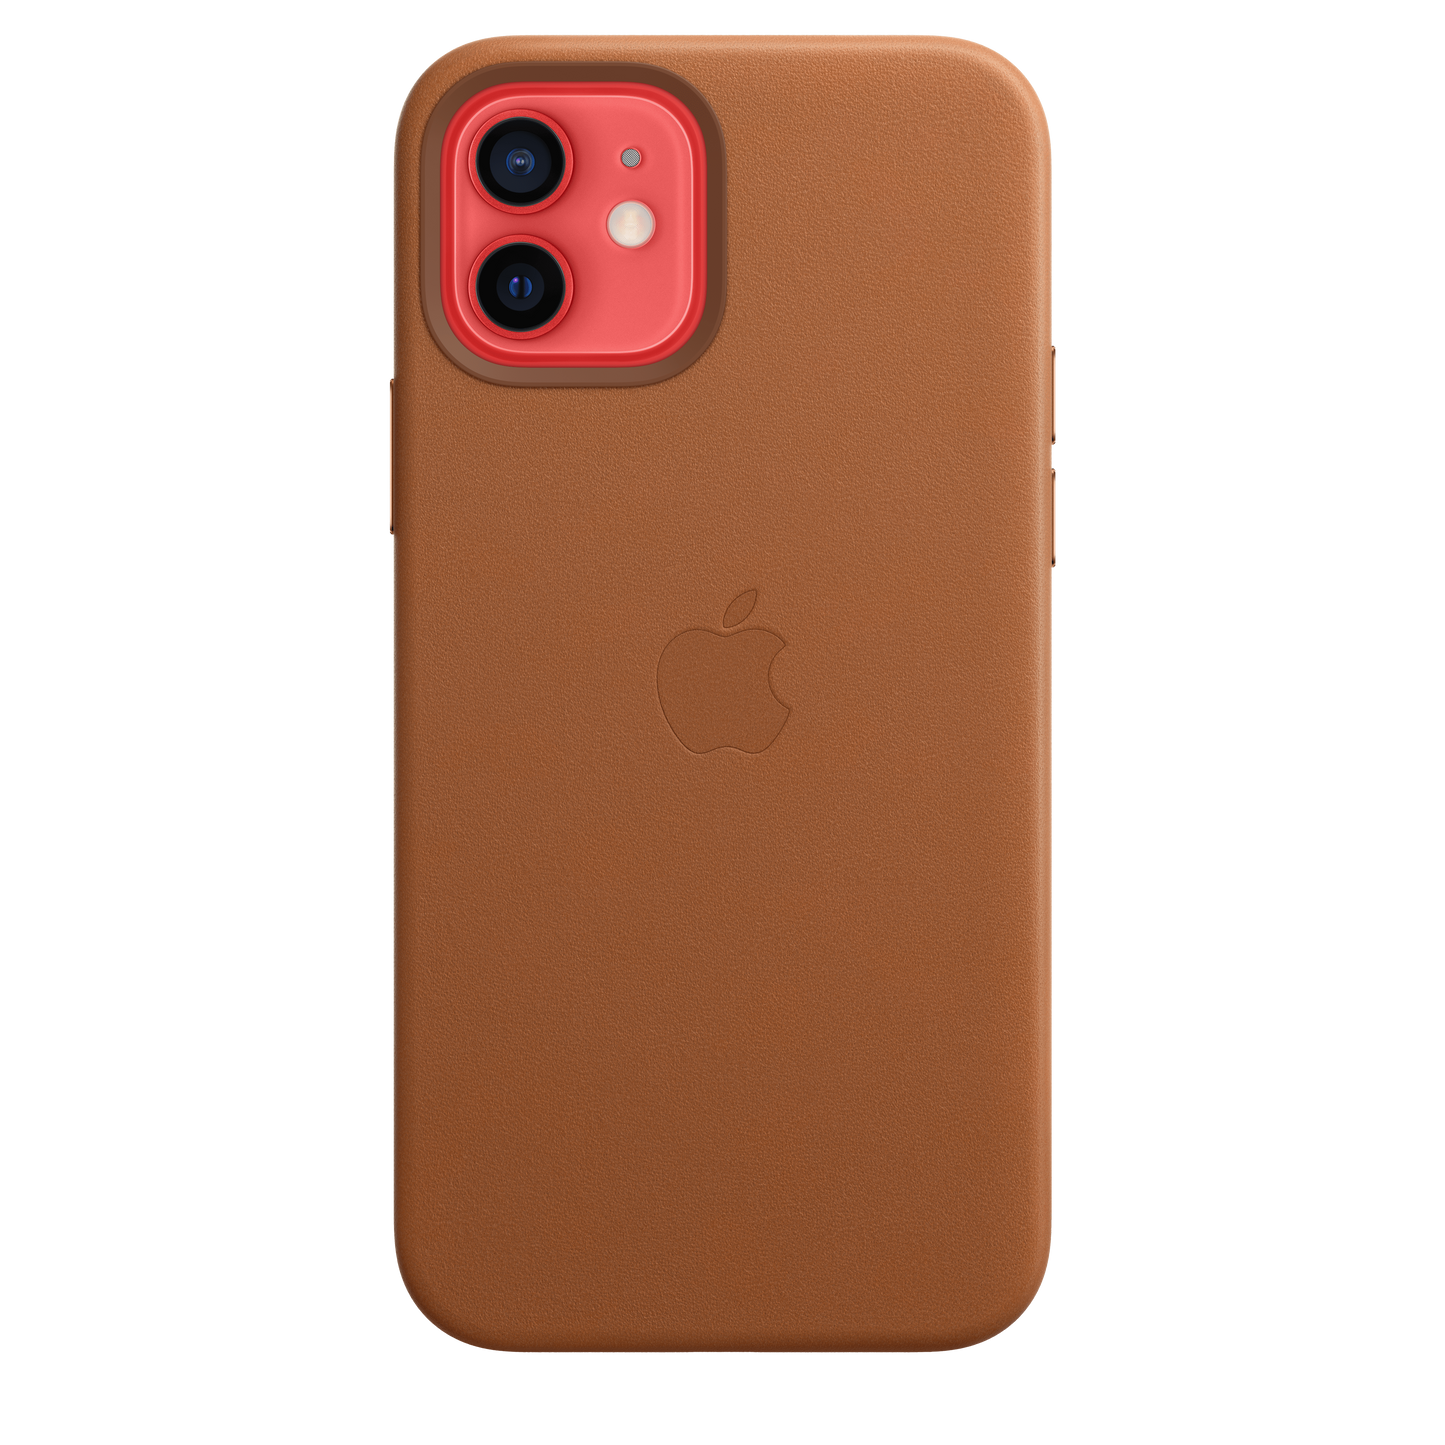 Funda de piel con MagSafe para el iPhone 12 y iPhone 12 Pro, Marrón caramelo - Rossellimac